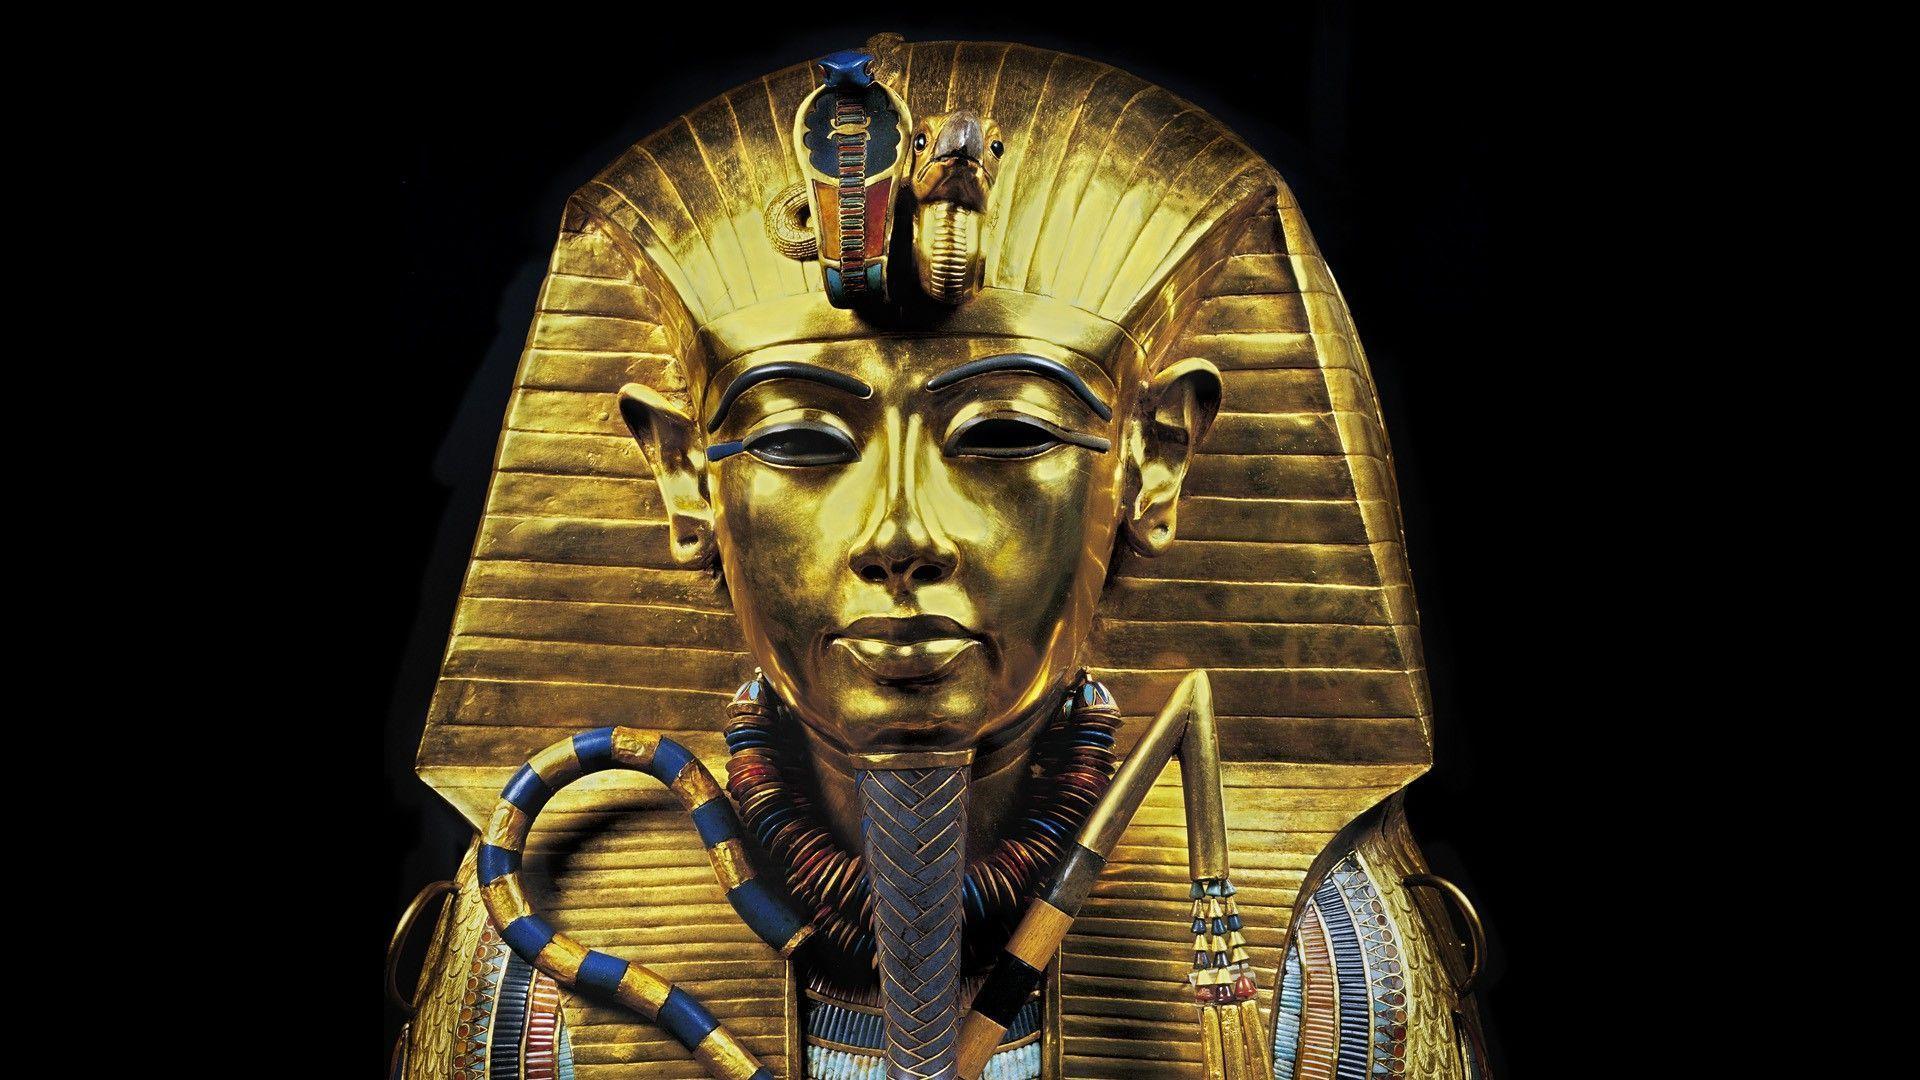 Pharaons Gold